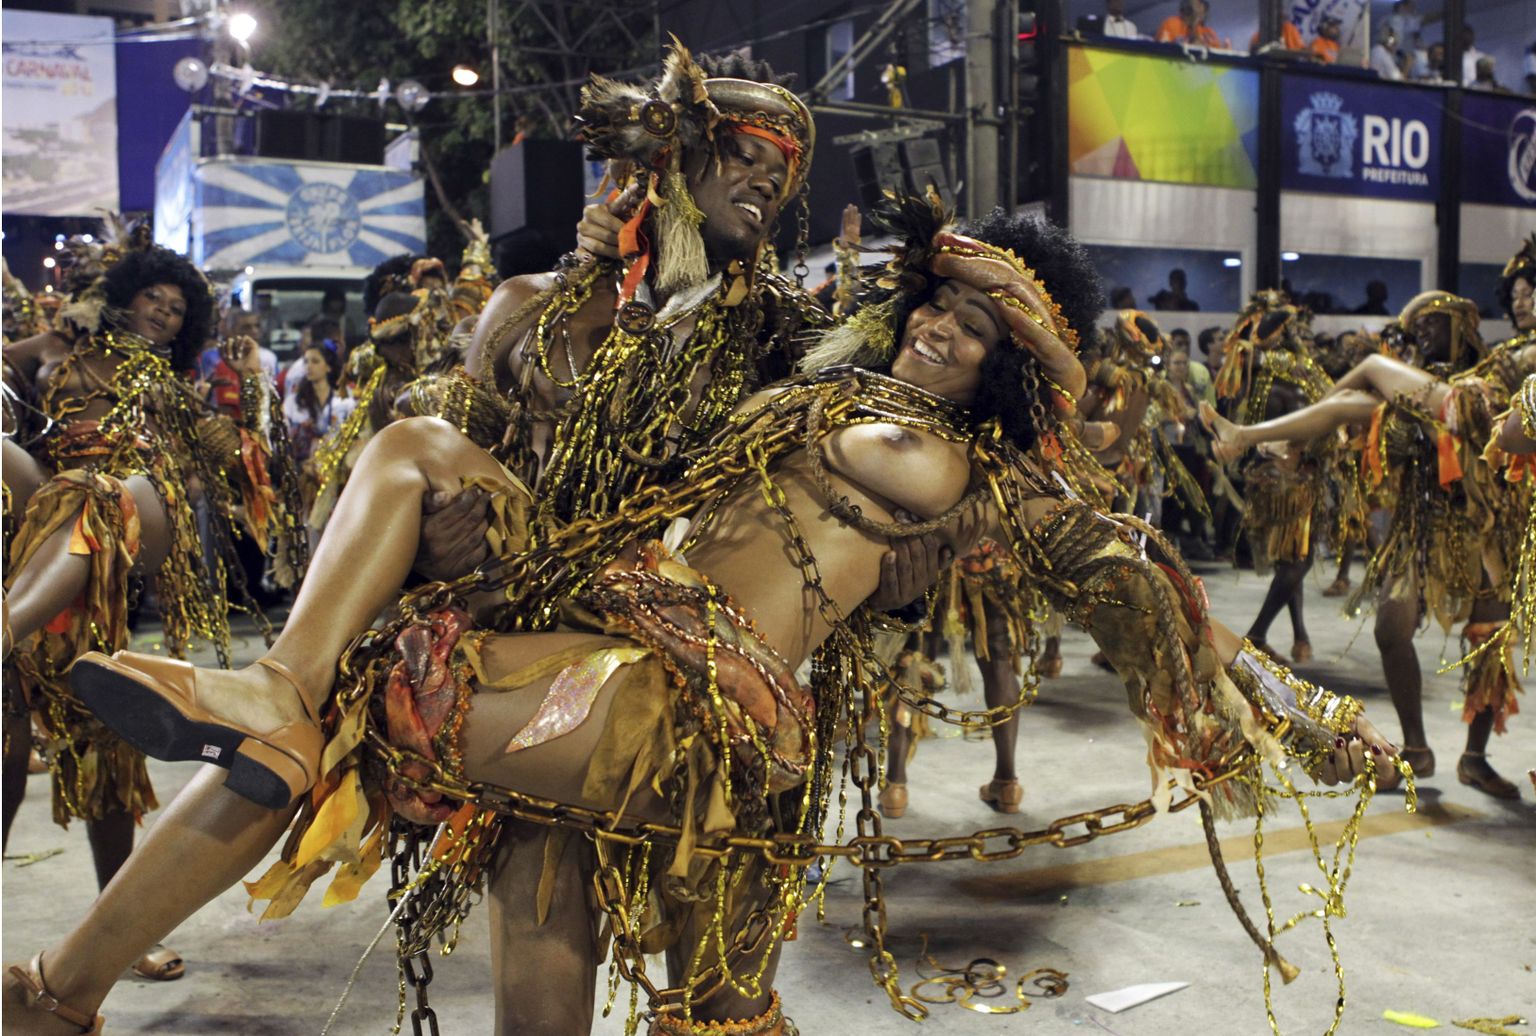 Beija-Flori sambakooli kasvandikud Rio karnevalil oma oskusi näitamas, iga-aastane suursündmus lõpeb homsel tuhkapäeval, mil usklikel algab ülestõusmispühadeni kestev suur paast.